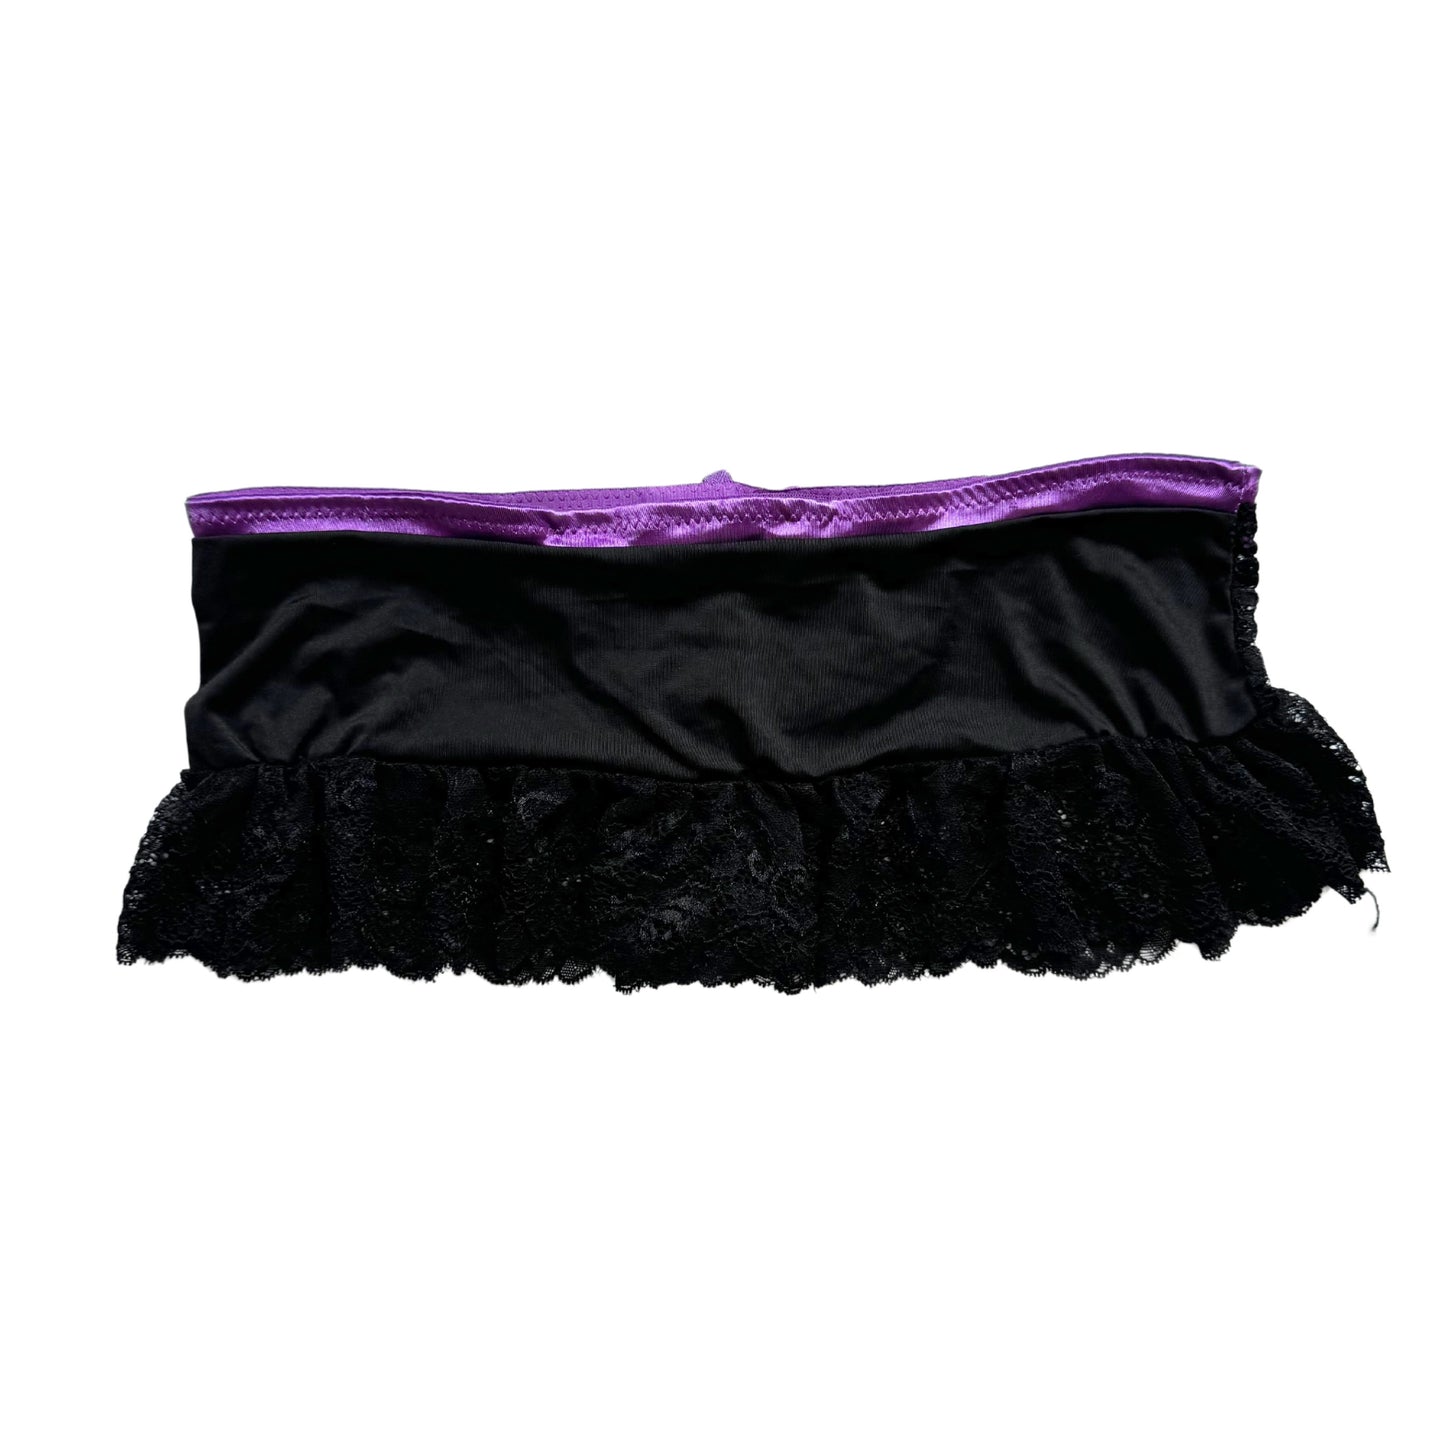 Vintage 2000s Y2k Playboy Purple Black Lace Thong